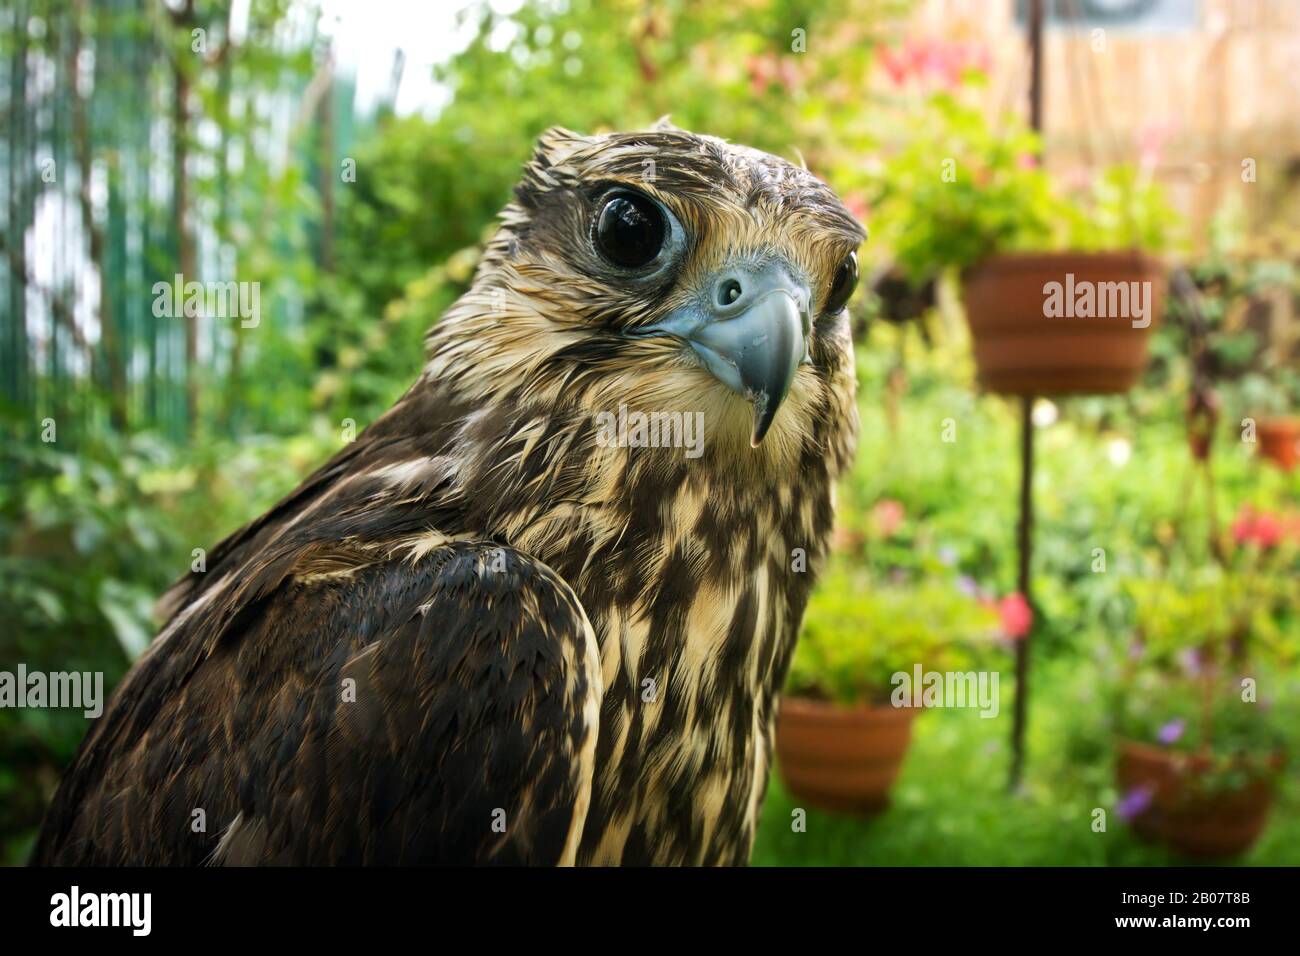 Falcon portrait close up. Birds of prey in nature. Stock Photo